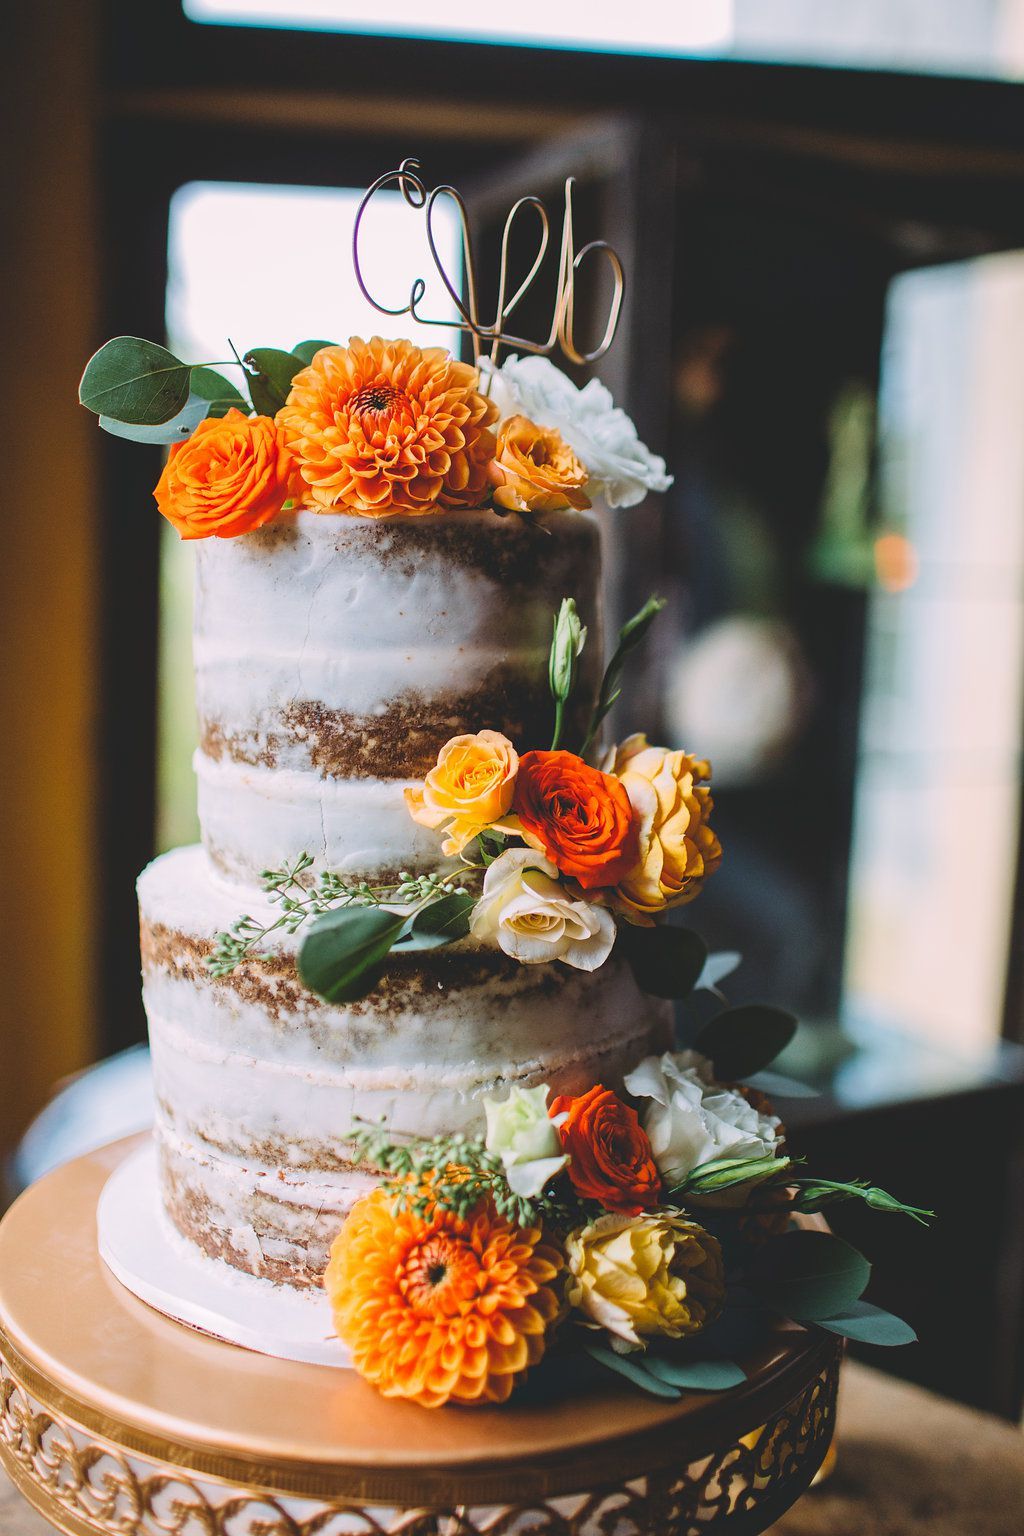 Свадьба в стиле осень: Свадьба осенью: образ жениха | Свадебная невеста 2020